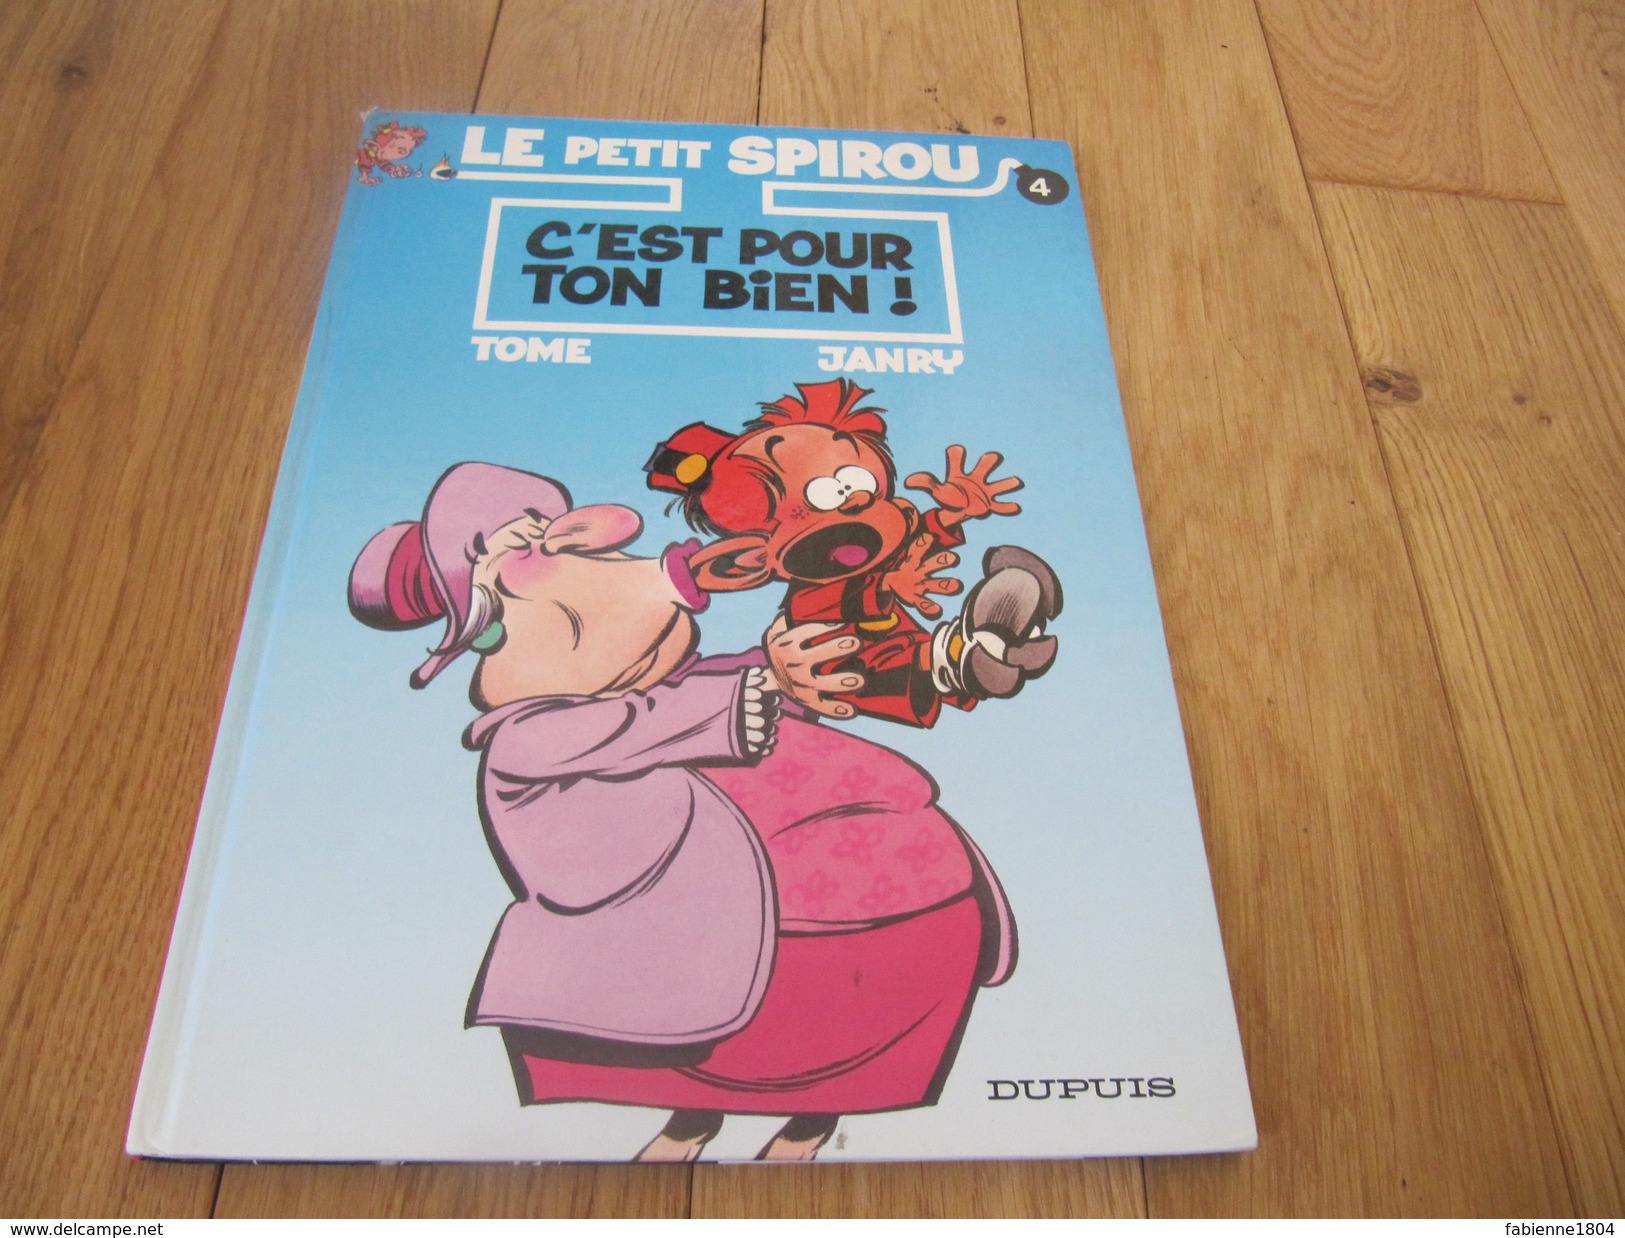 Livre Bd Le Petit Spirou N° 4 C'est Pour Ton Bien Tome Janvry Ed. Dupuis - Spirou Et Fantasio